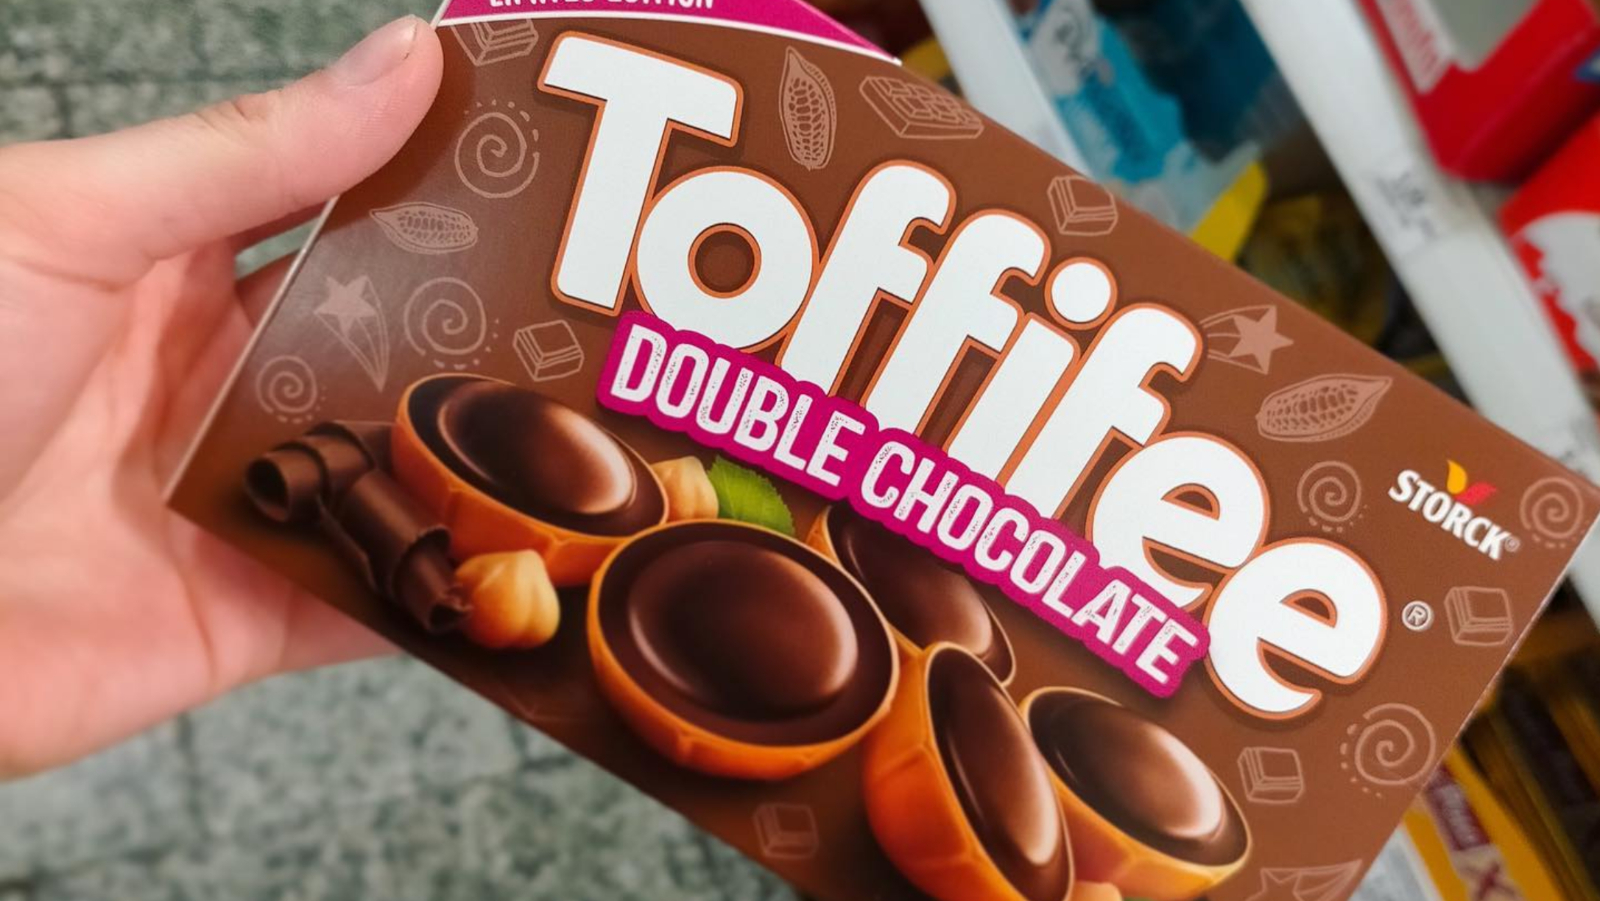 Toffifee dupla čokolada: Uskoro stiže savršeno limitirano izdanje omiljene poslastice